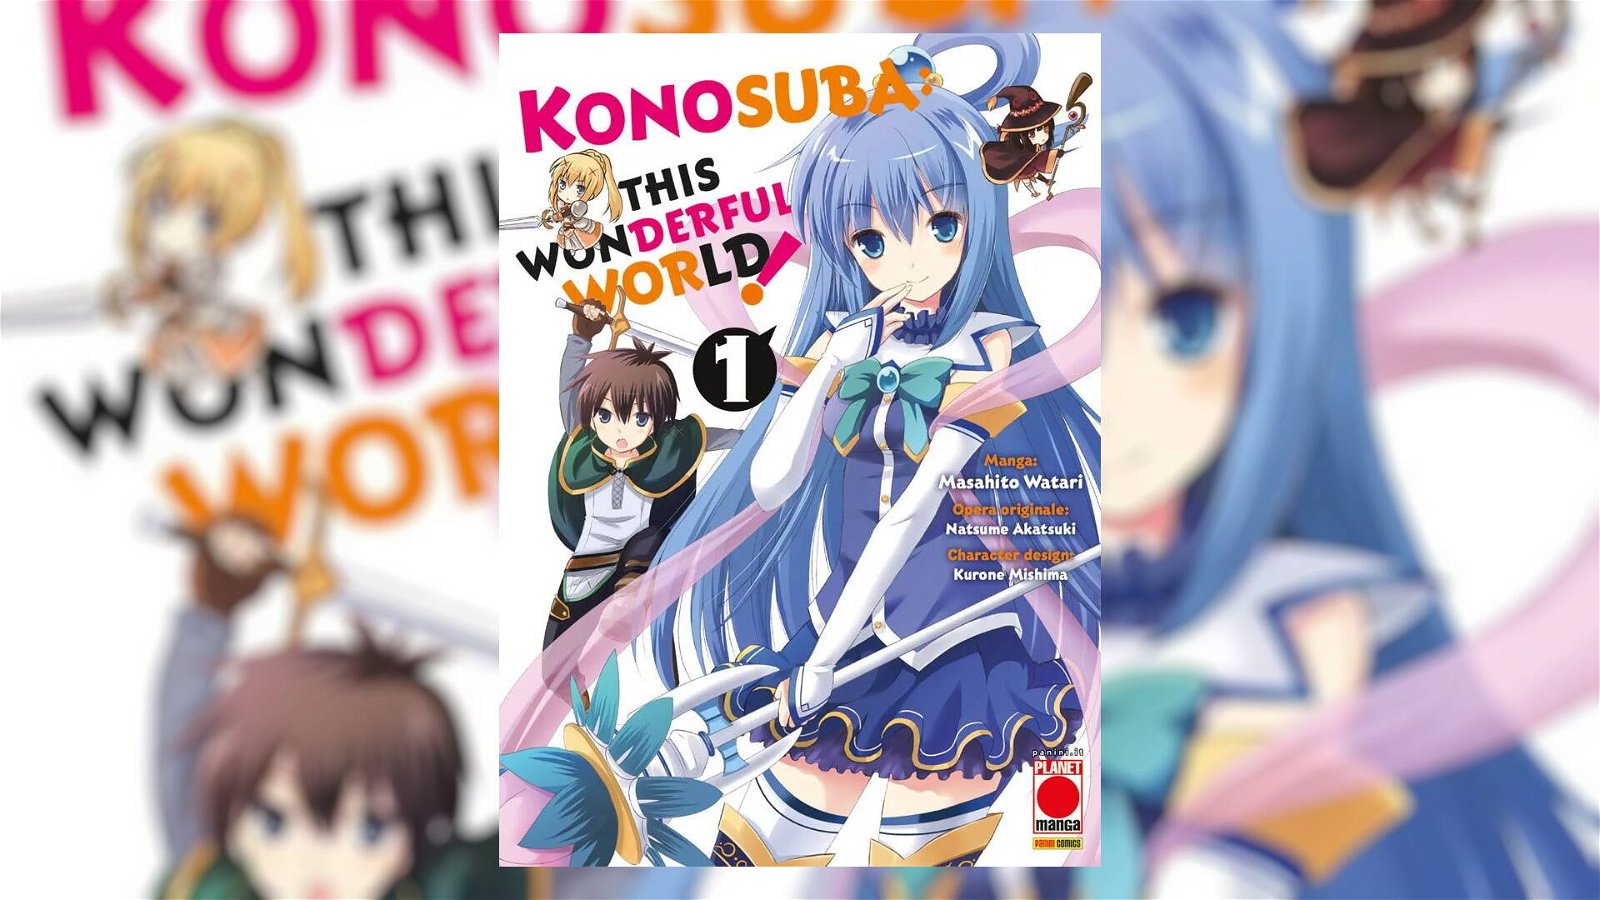 Immagine di Konosuba: This Wonderful World!, la recensione del Volume 1